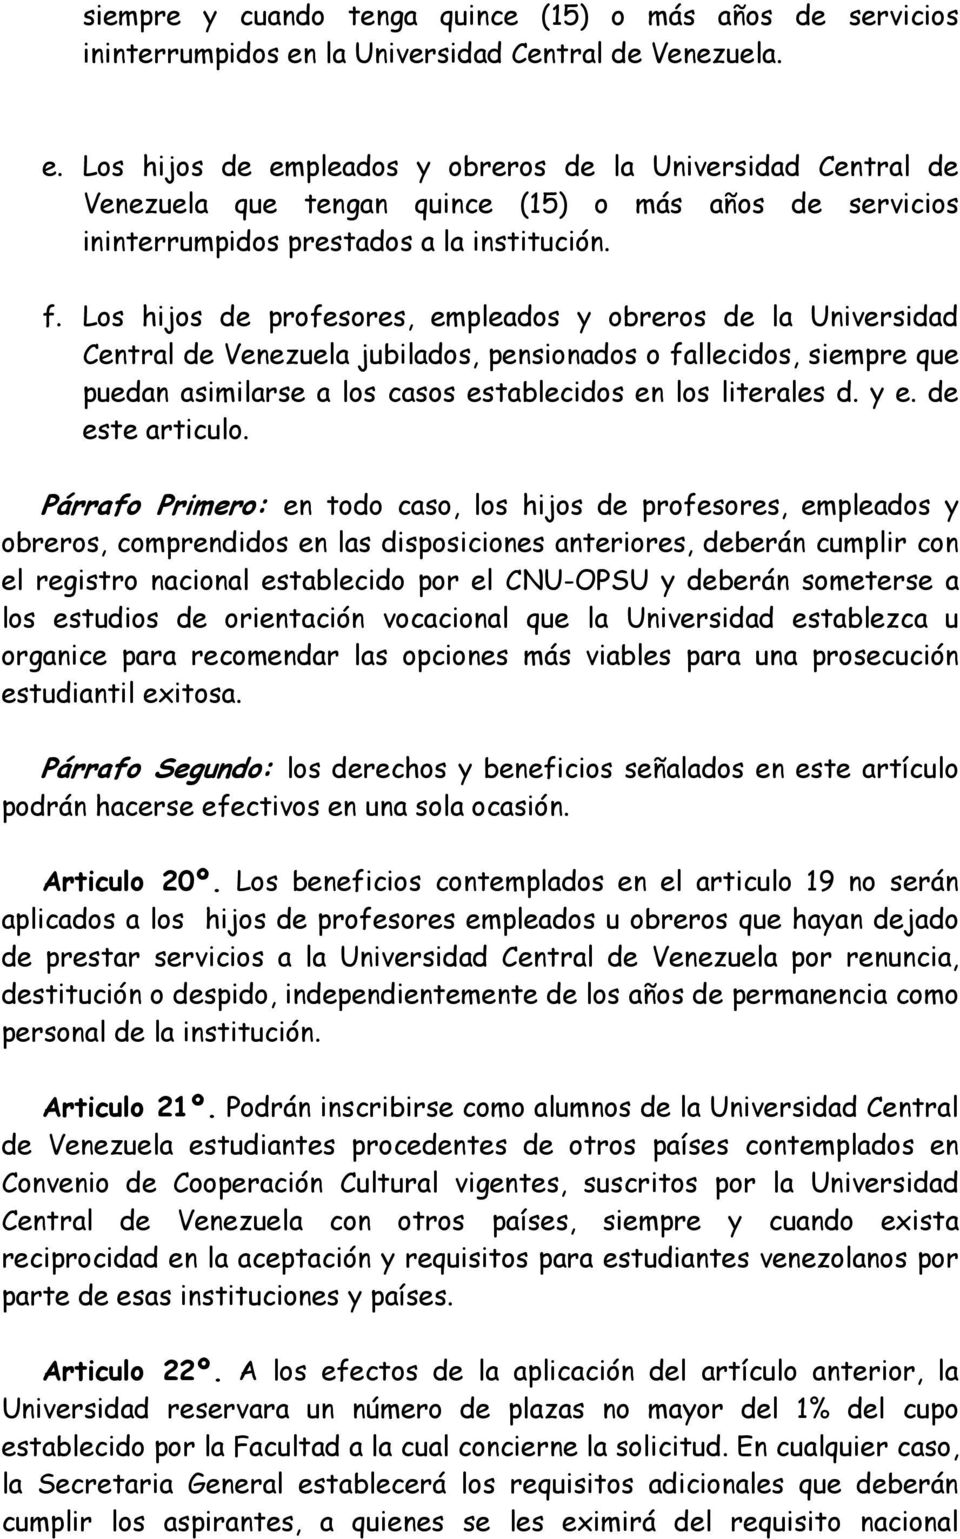 Los hijos de empleados y obreros de la Universidad Central de Venezuela que tengan quince (15) o más años de servicios ininterrumpidos prestados a la institución. f.